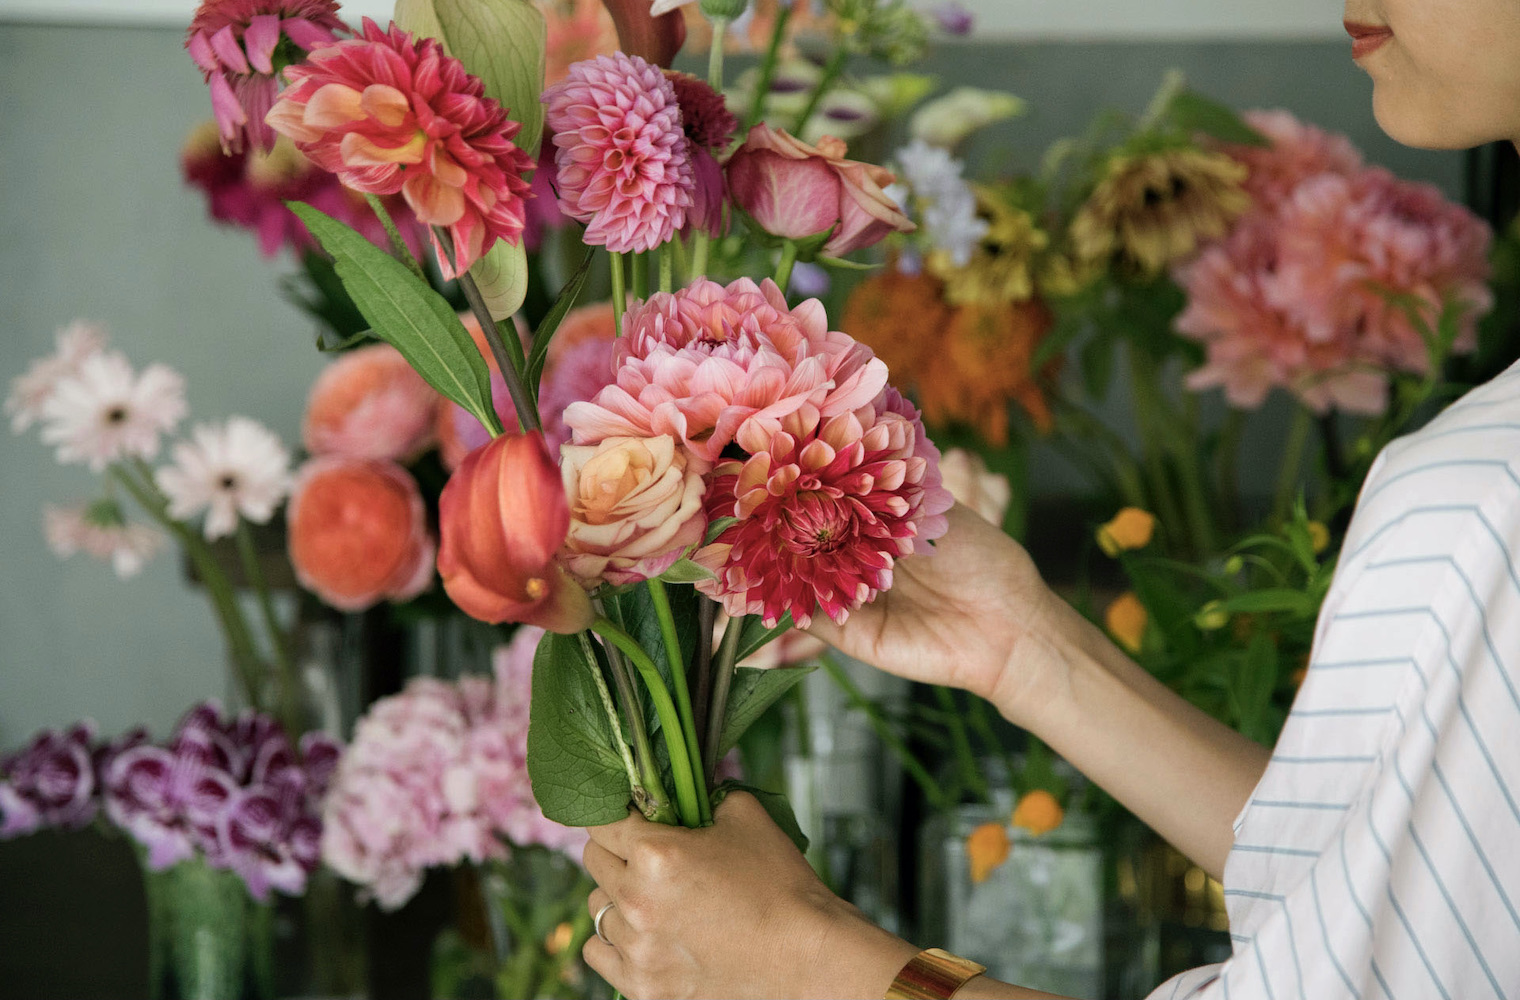 前田さんがオーナーを務めるフラワーショップ『NUR』では、「1輪でも飾って楽しめるような花」を中心にセレクト。